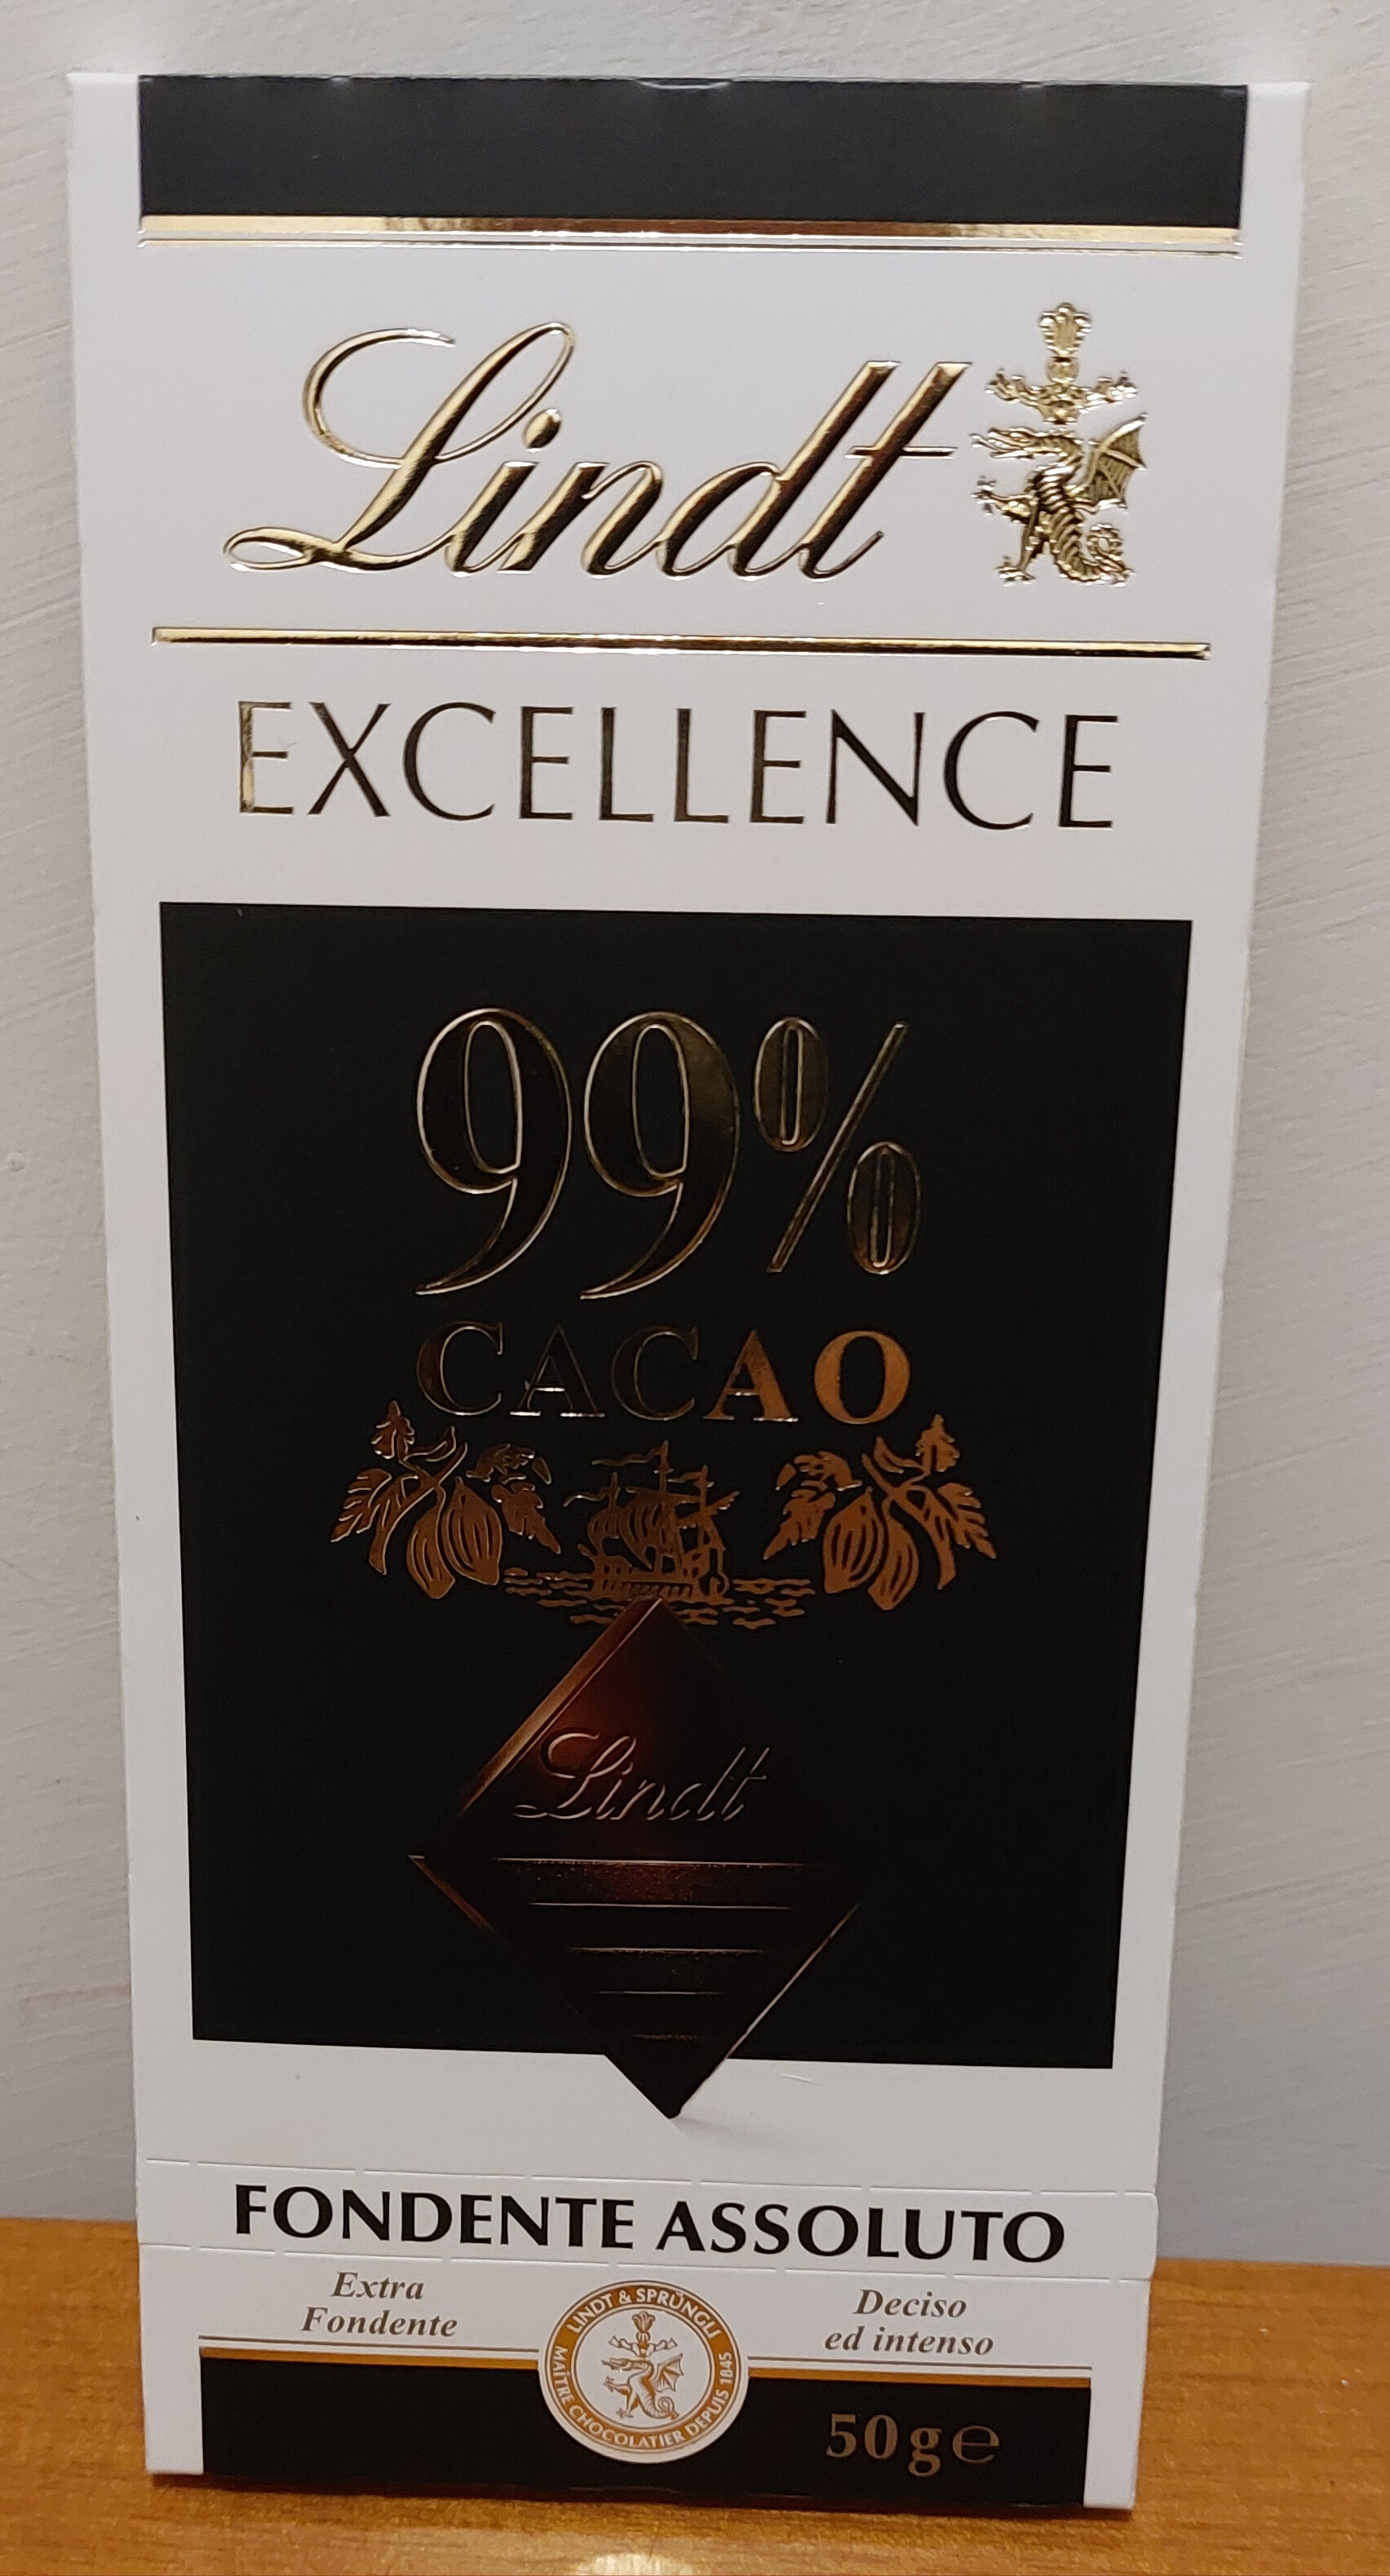 Excellence 99% Cacao Noir Absolu - Prodotto